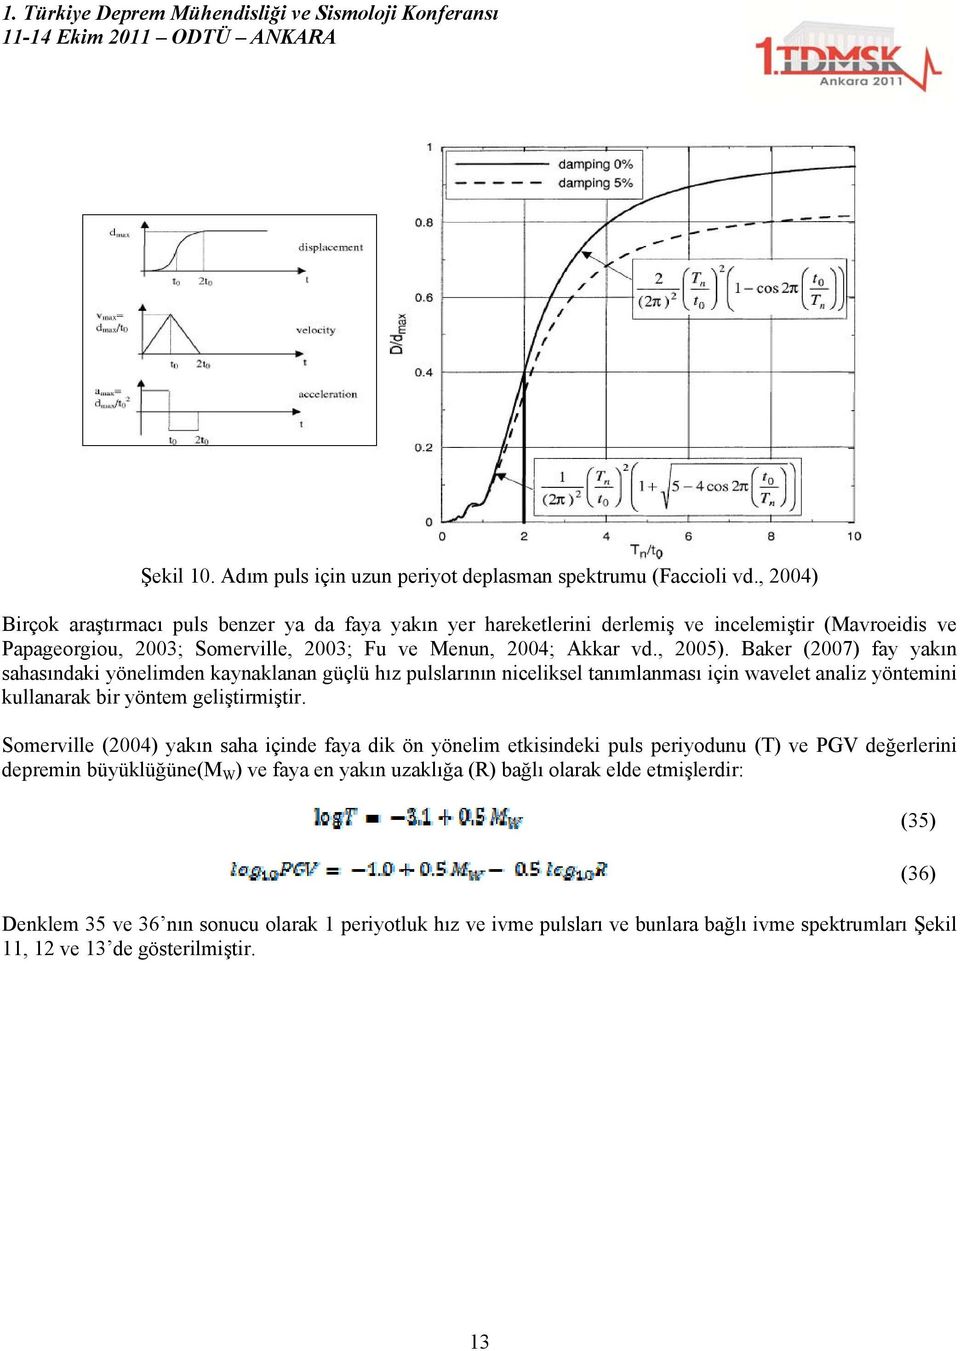 Baker (2007) fay yakın sahasındaki yönelimden kaynaklanan güçlü hız pulslarının niceliksel tanımlanması için wavelet analiz yöntemini kullanarak bir yöntem geliştirmiştir.